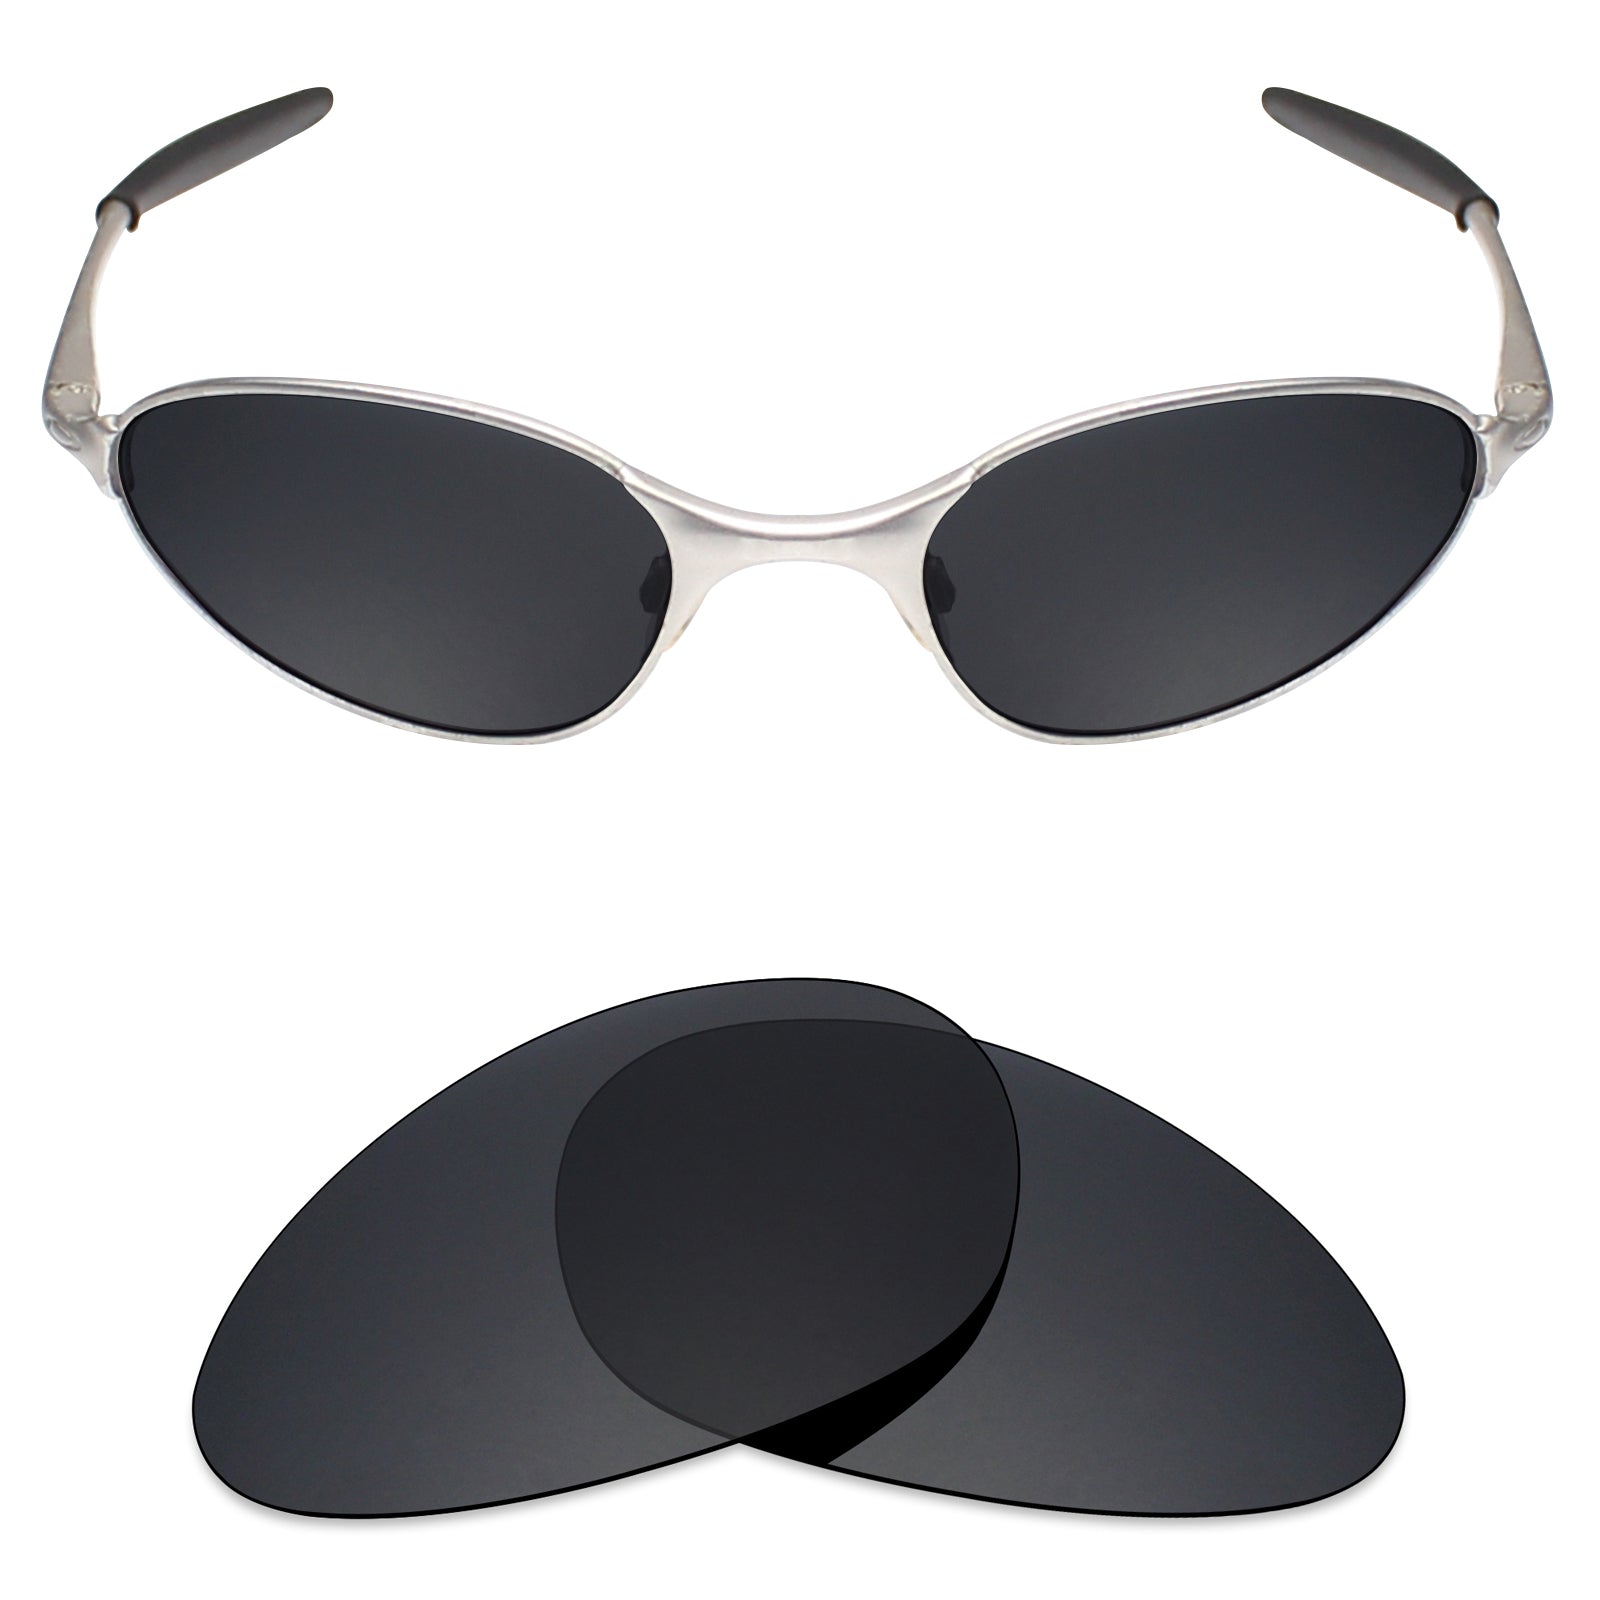 oakley c wire sunglasses